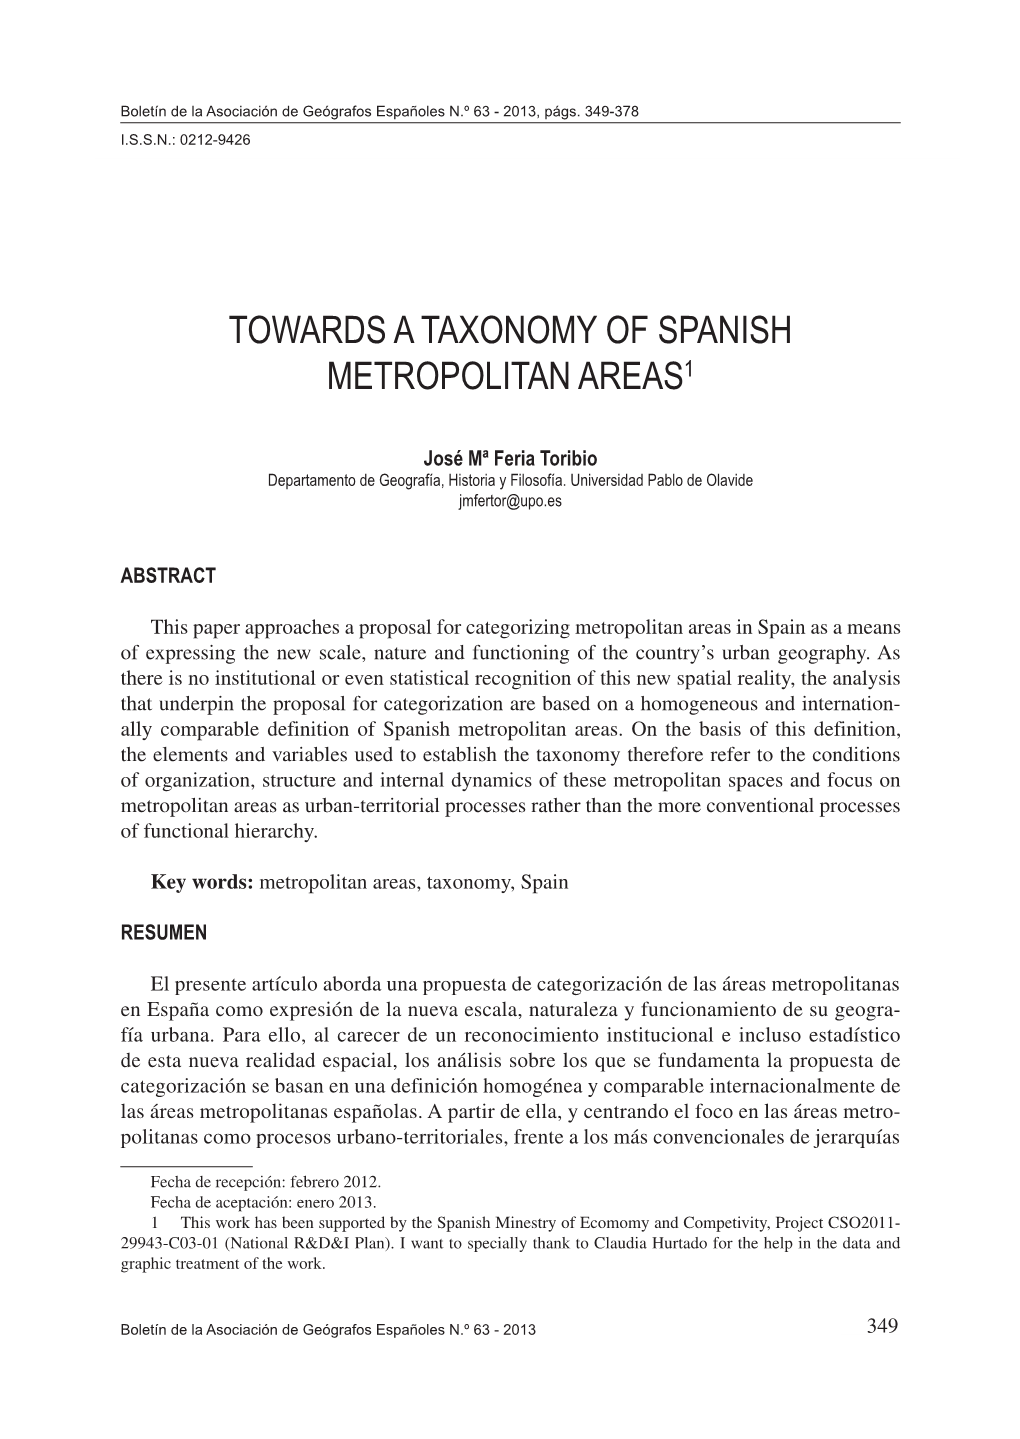 Towards a Taxonomy of Spanish Metropolitan Areas1